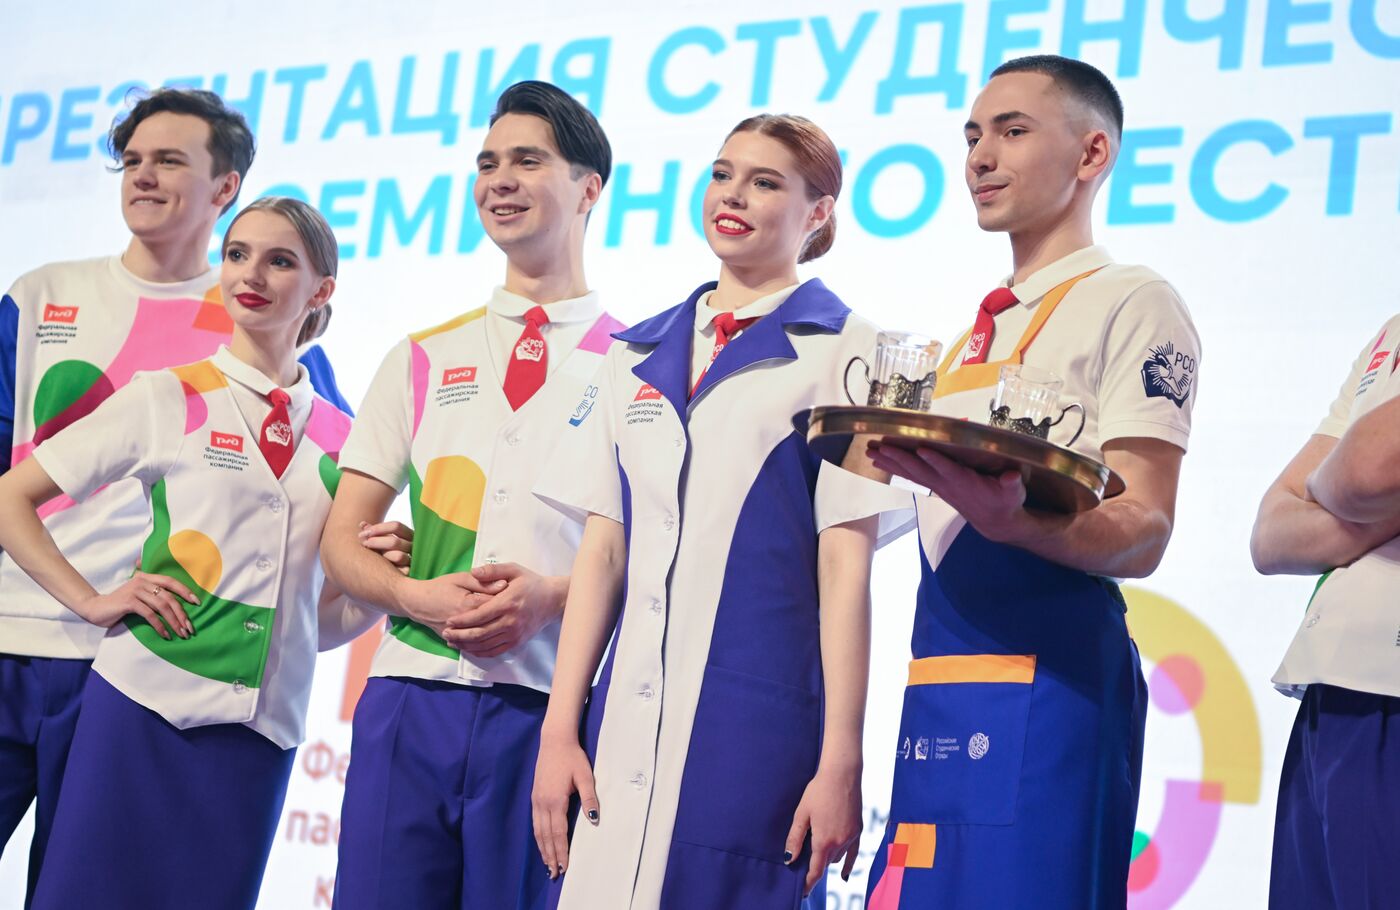 Выставка "Россия". Презентация формы на Всемирный фестиваль молодежи